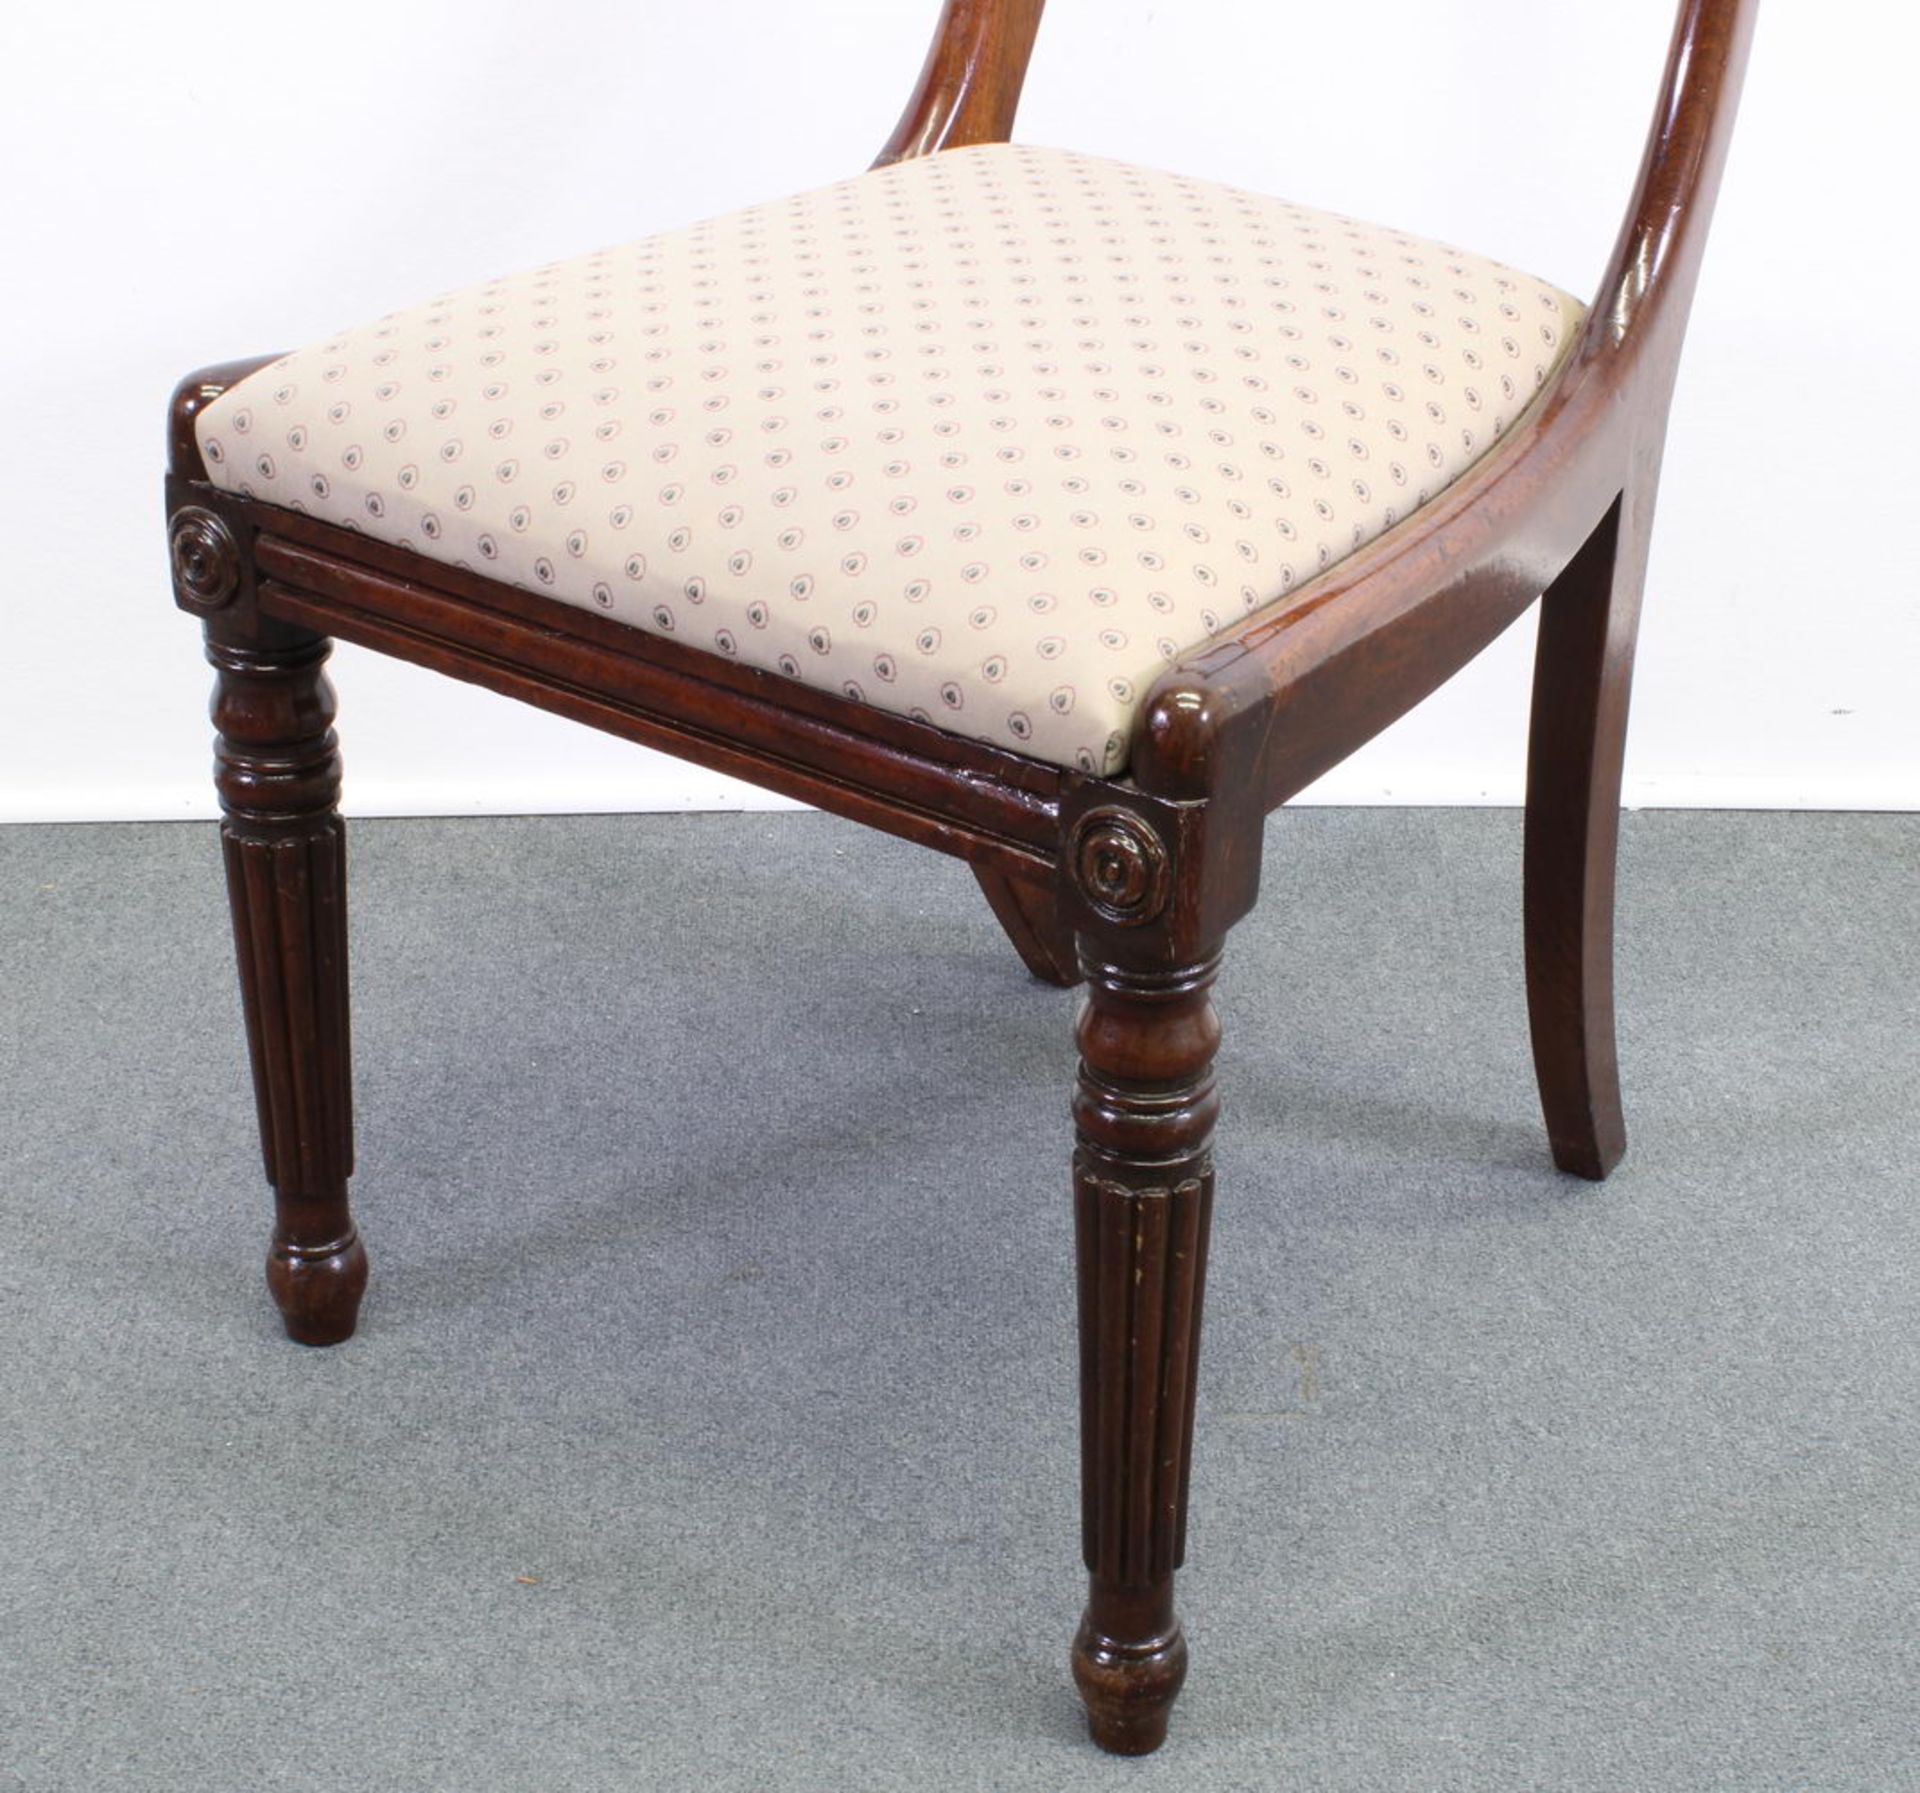 4 Stühle, England, um 1920, Mahagoni, vordere Beine kanneliert, lose Sitzpolster, beiger Bezug - Bild 3 aus 4